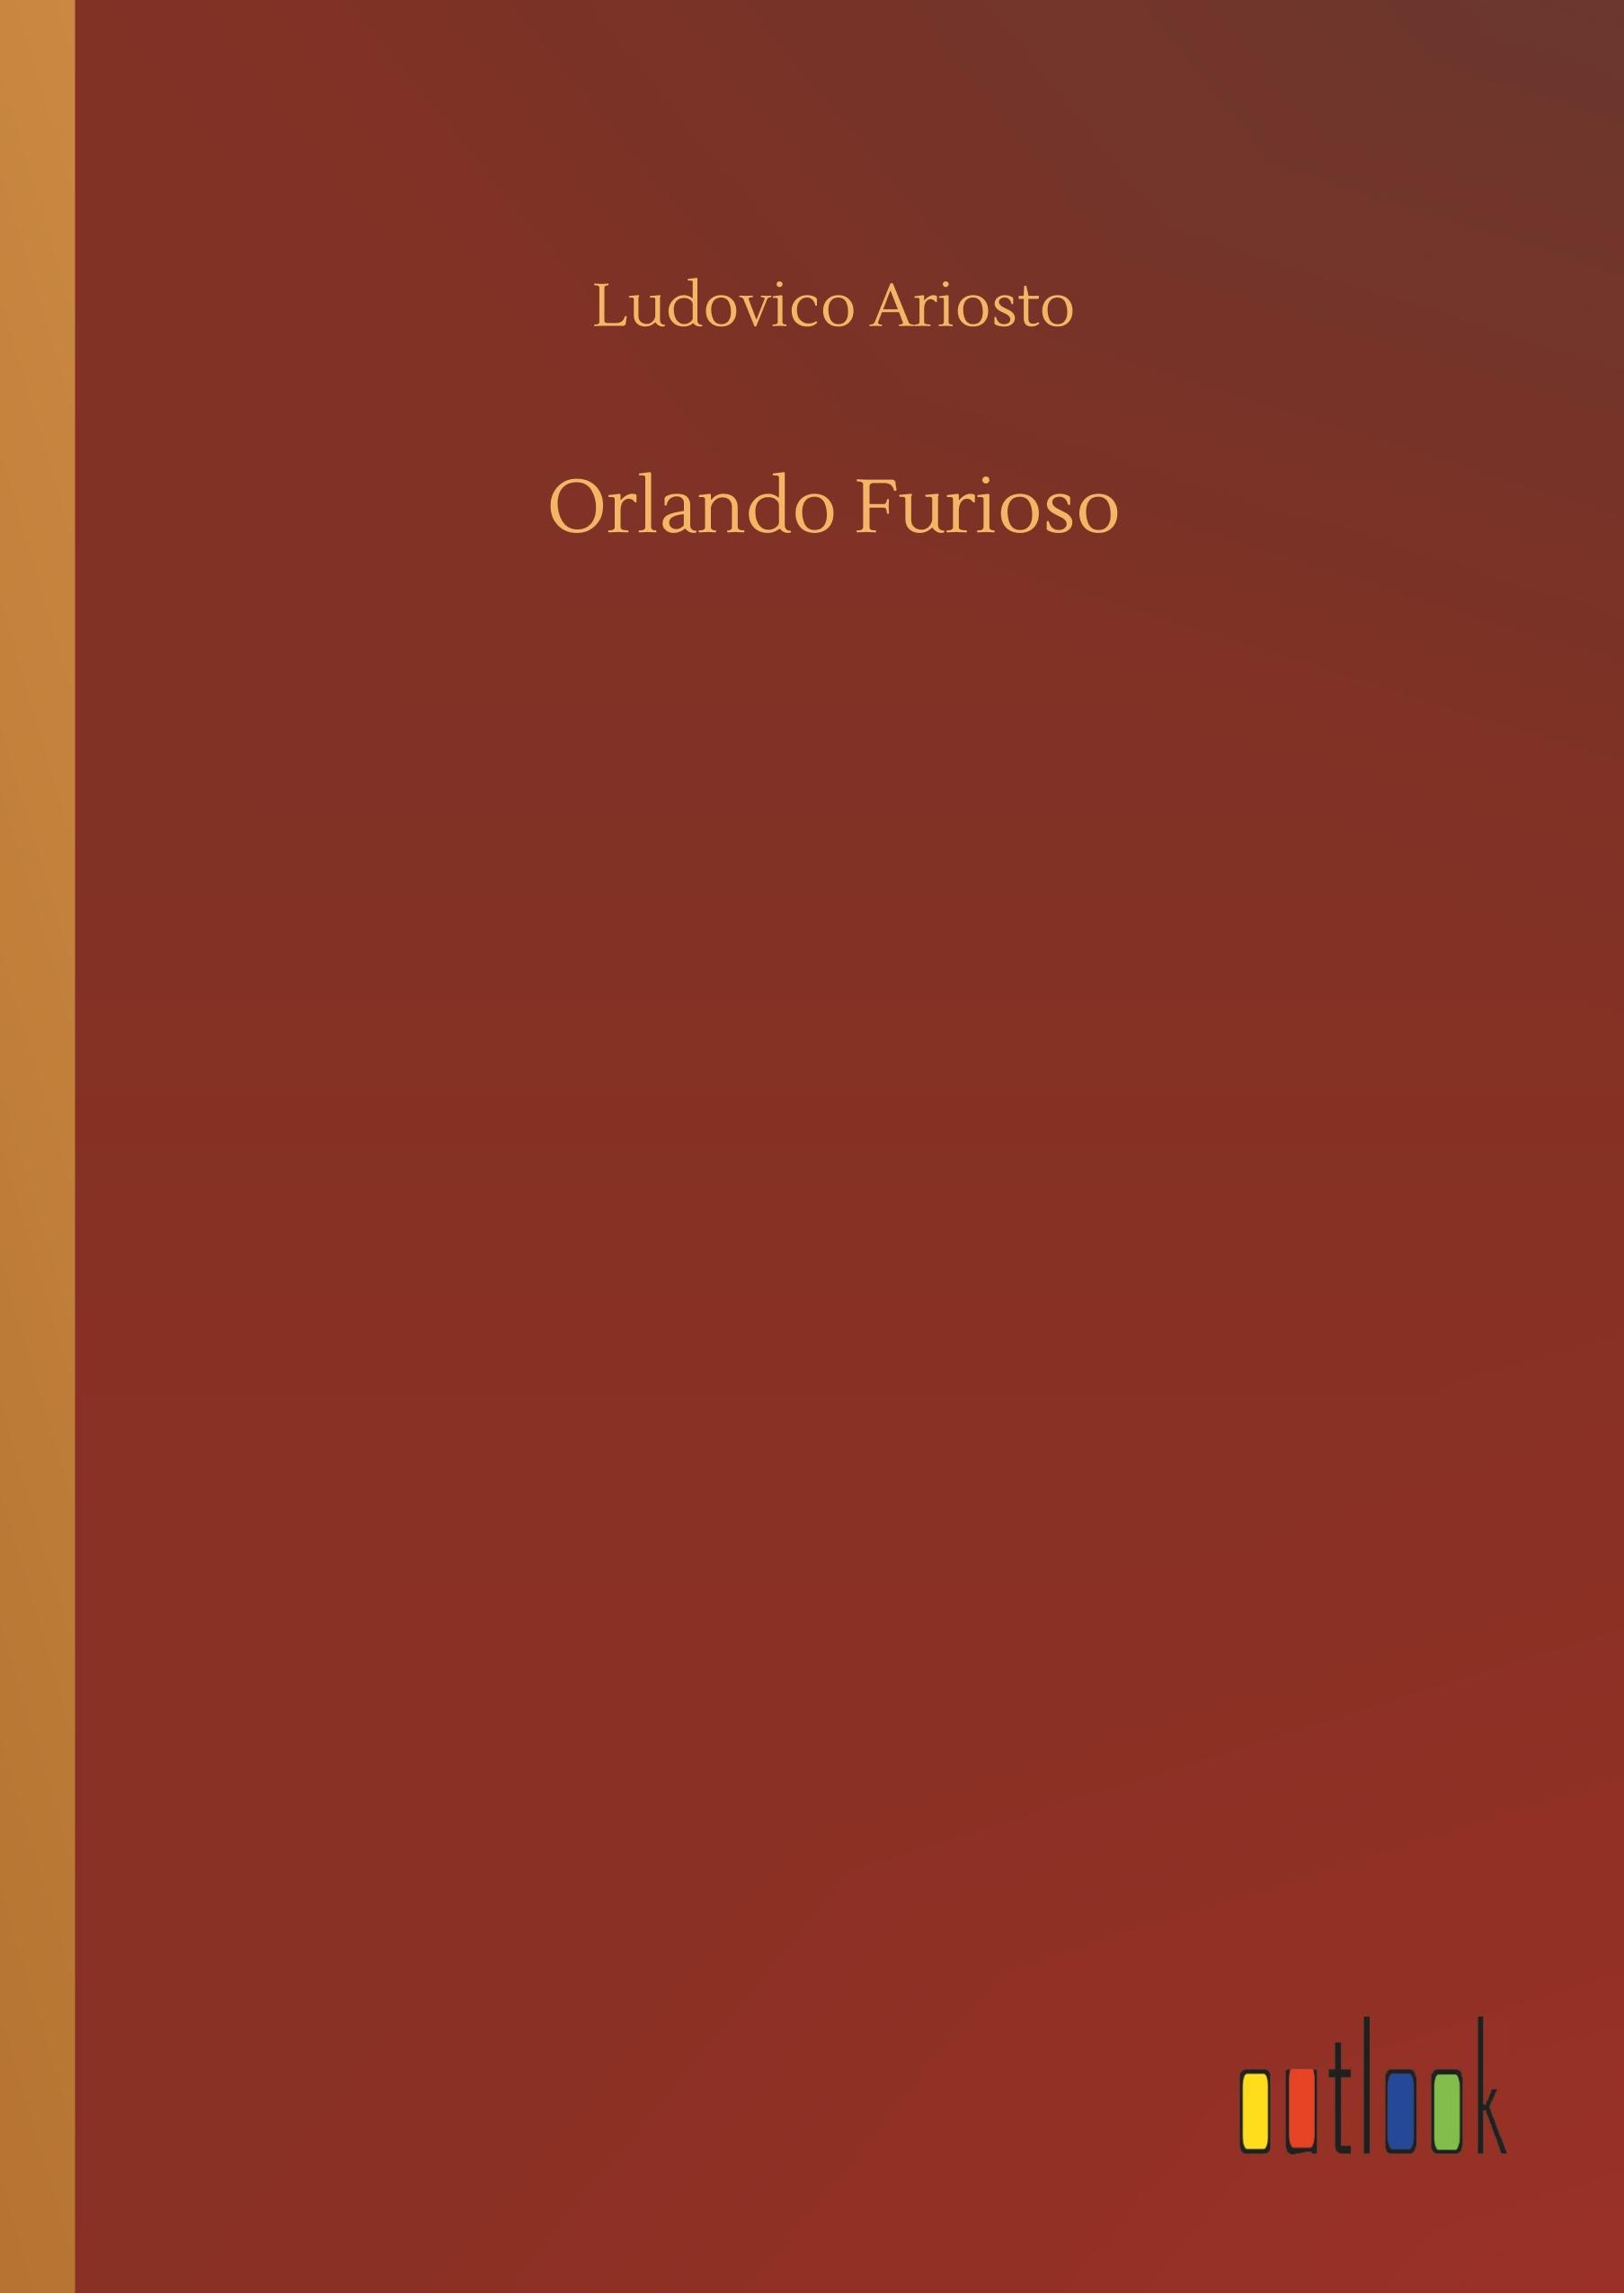 Orlando Furioso - Ariosto, Ludovico